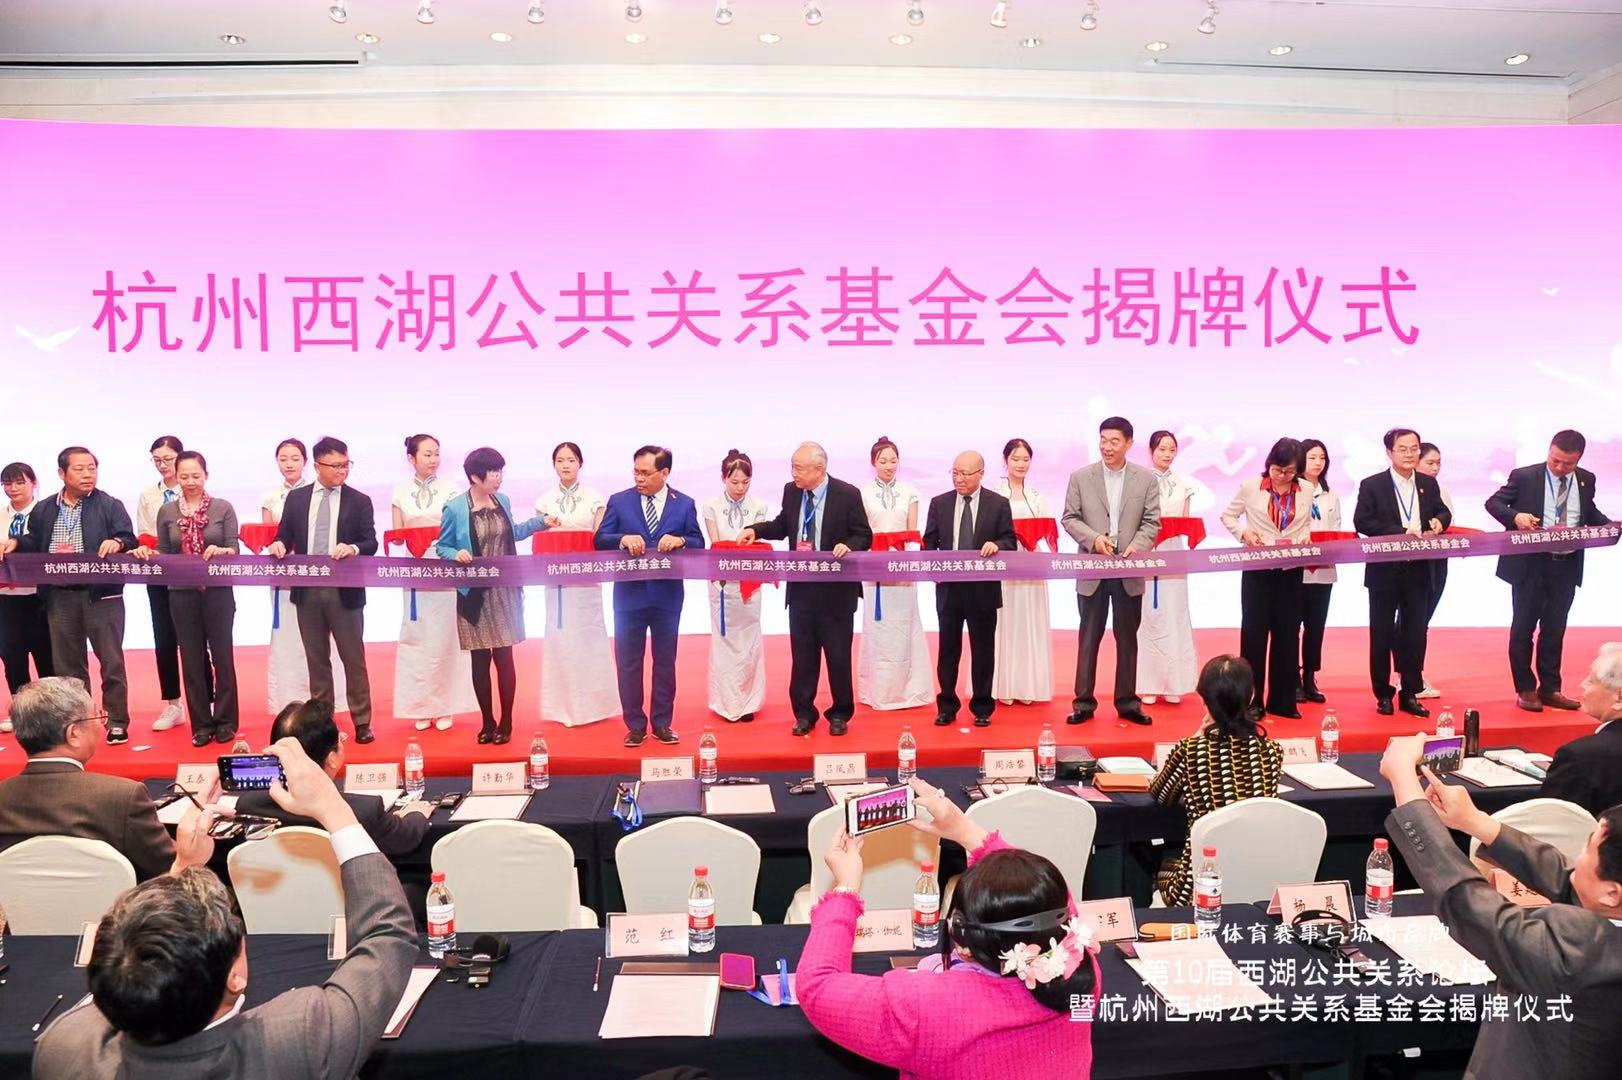 第10届西湖公关论坛暨杭州西湖公共关系基金会揭牌仪式在杭隆重举行